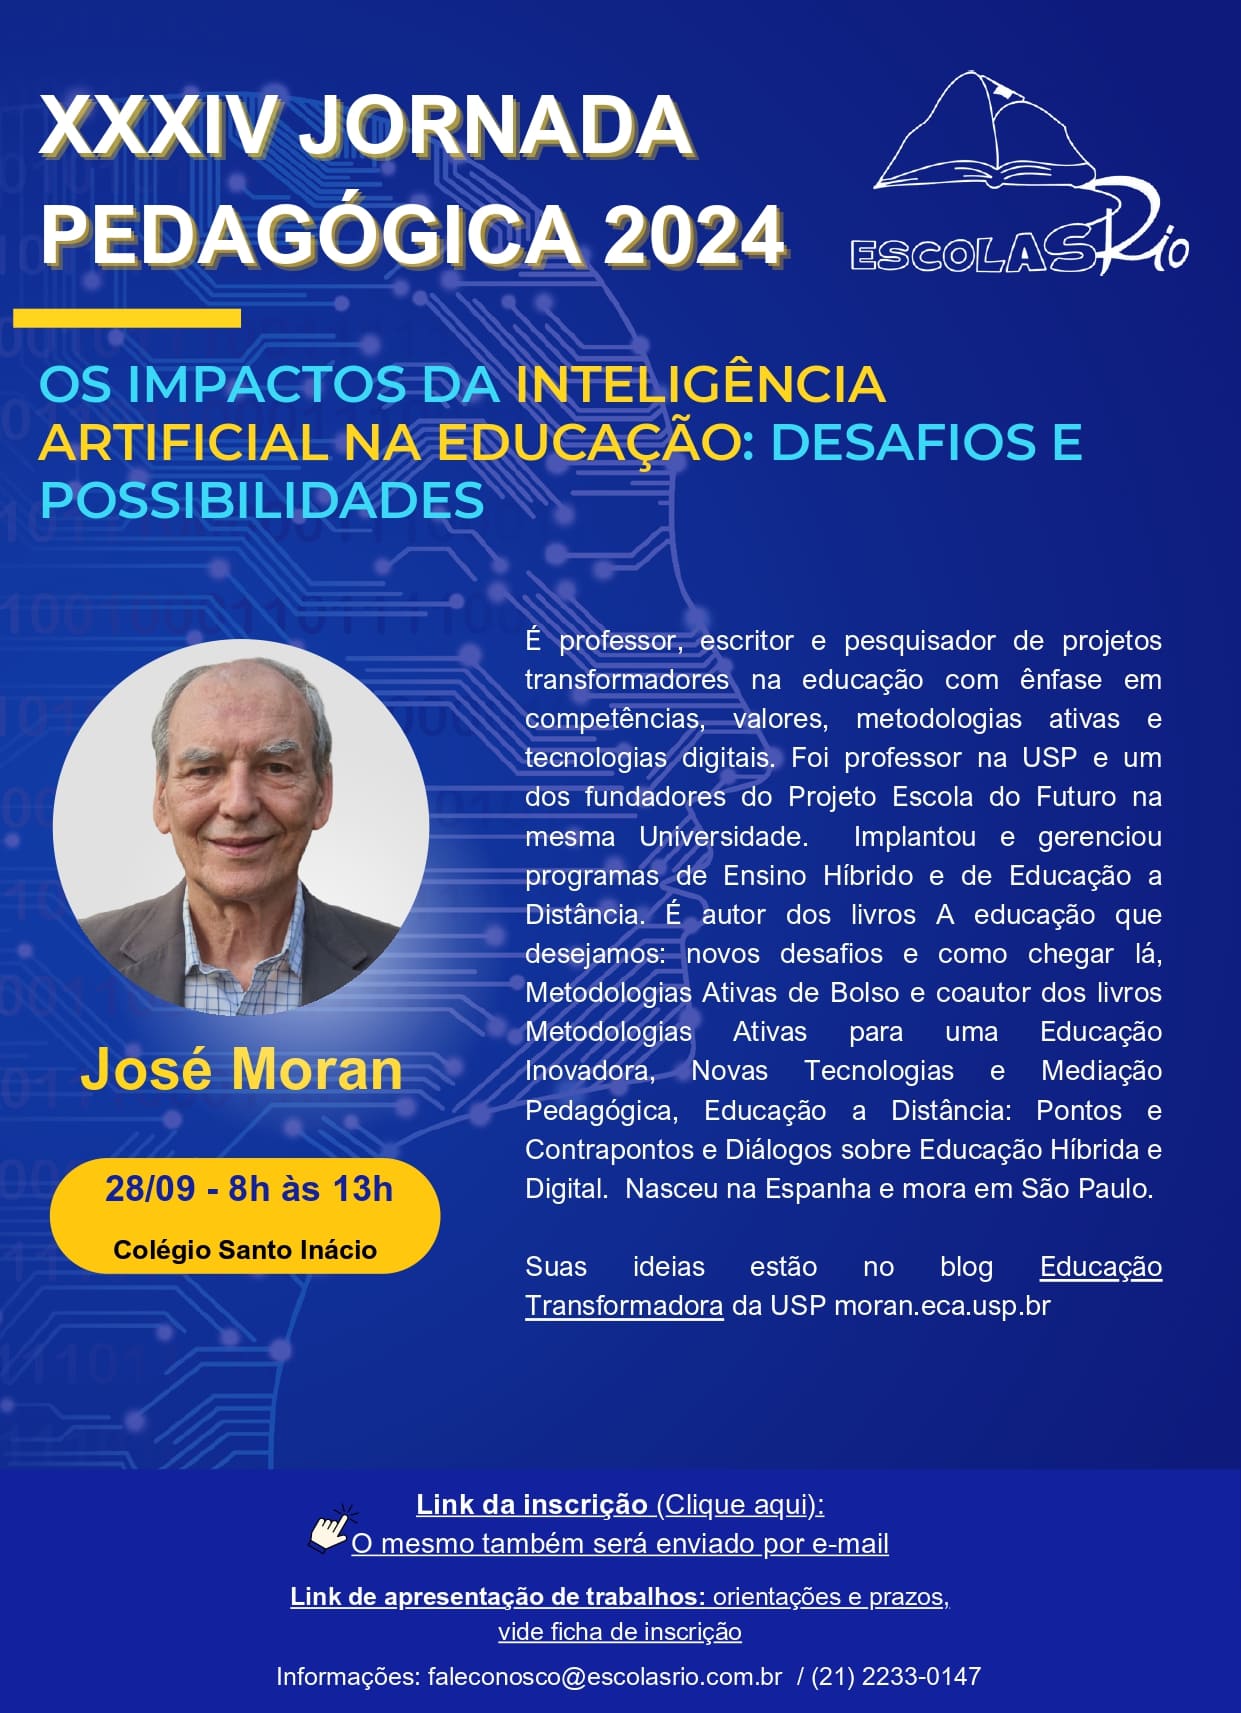 XXXIV Jornada Pedagógica ESCOLAS RIO - 2024